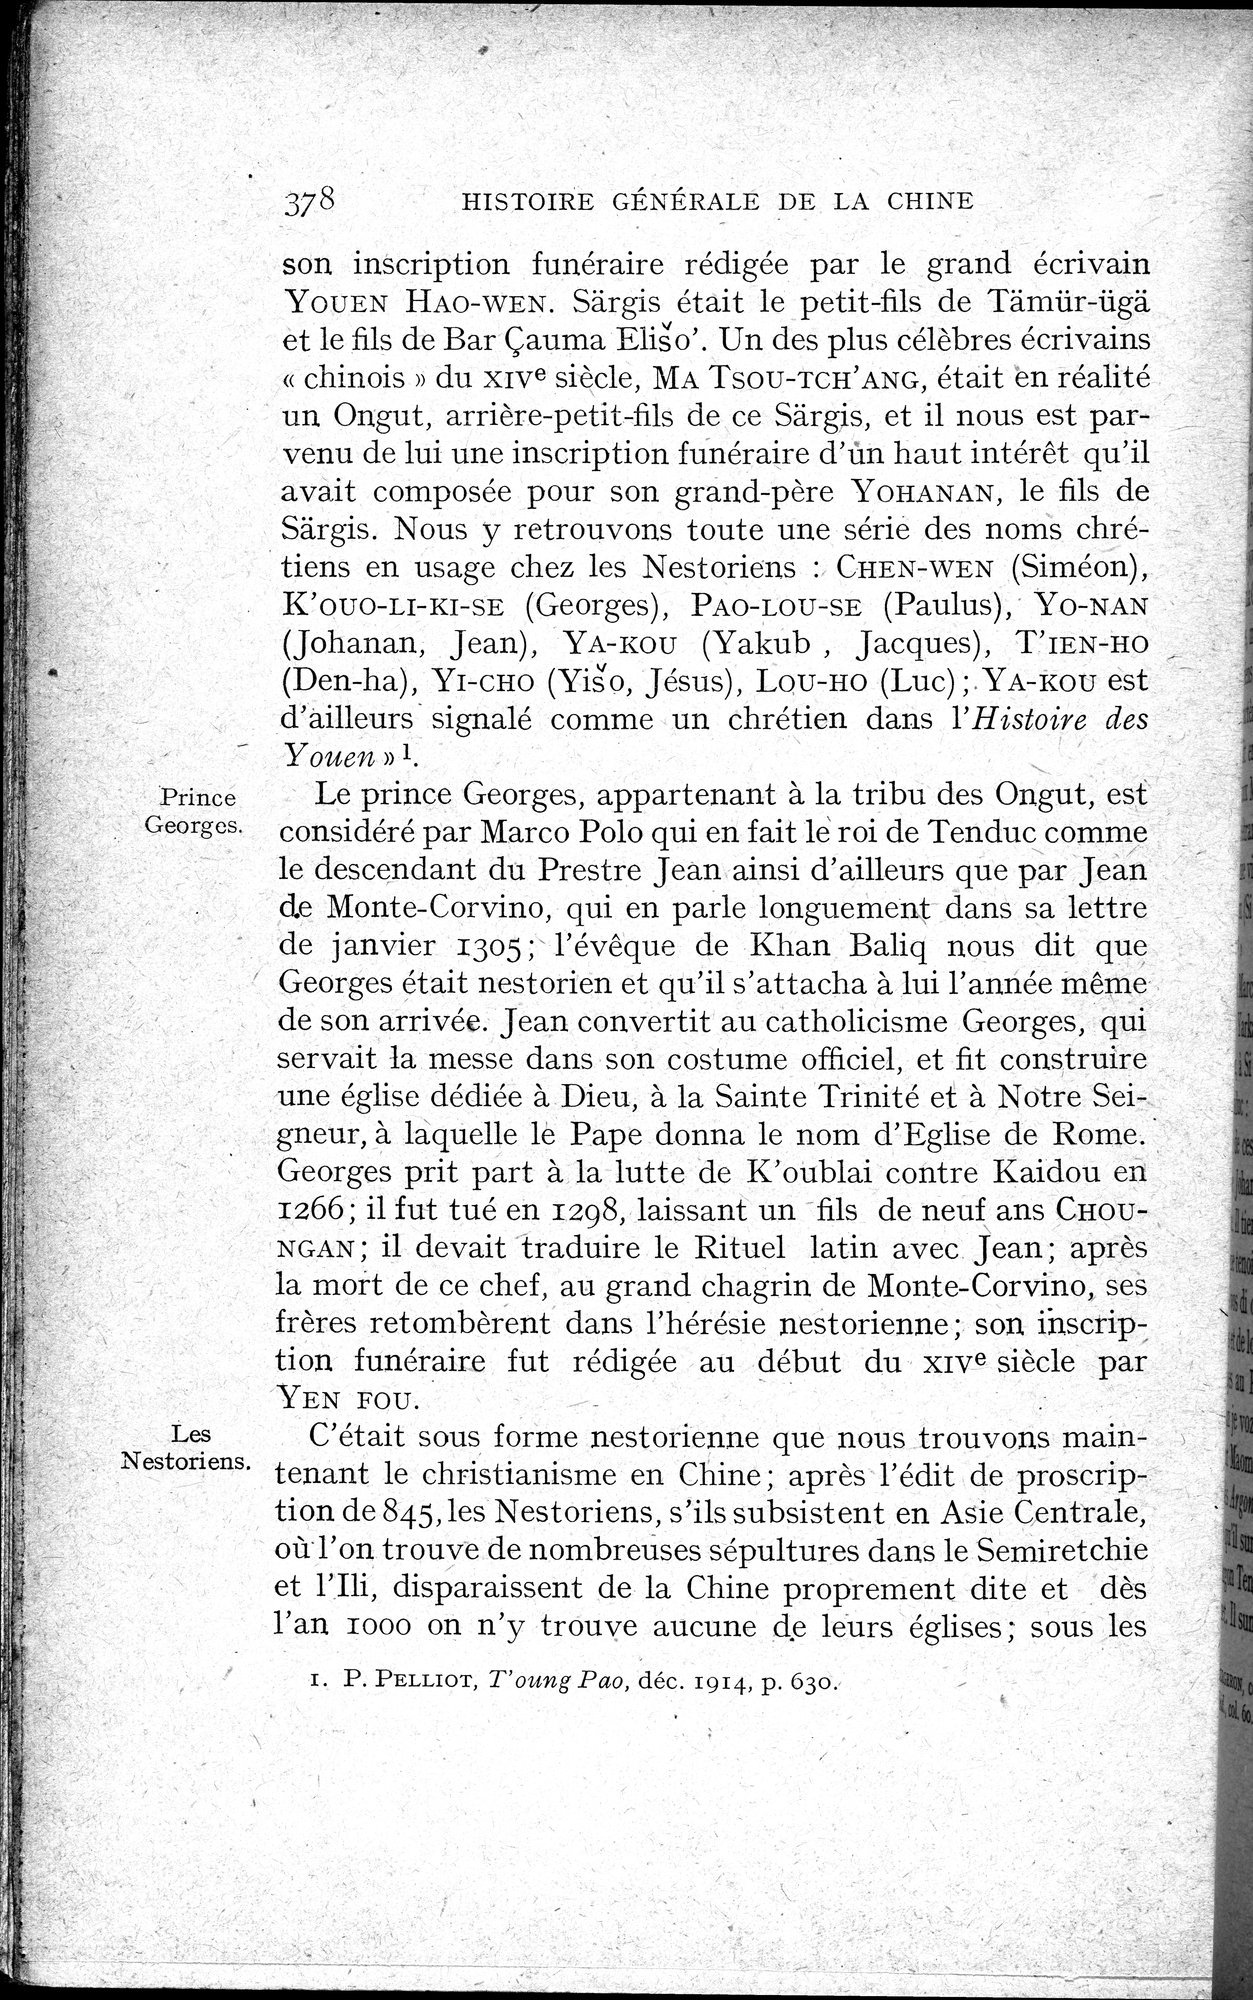 Histoire Générale de la Chine : vol.2 / Page 380 (Grayscale High Resolution Image)